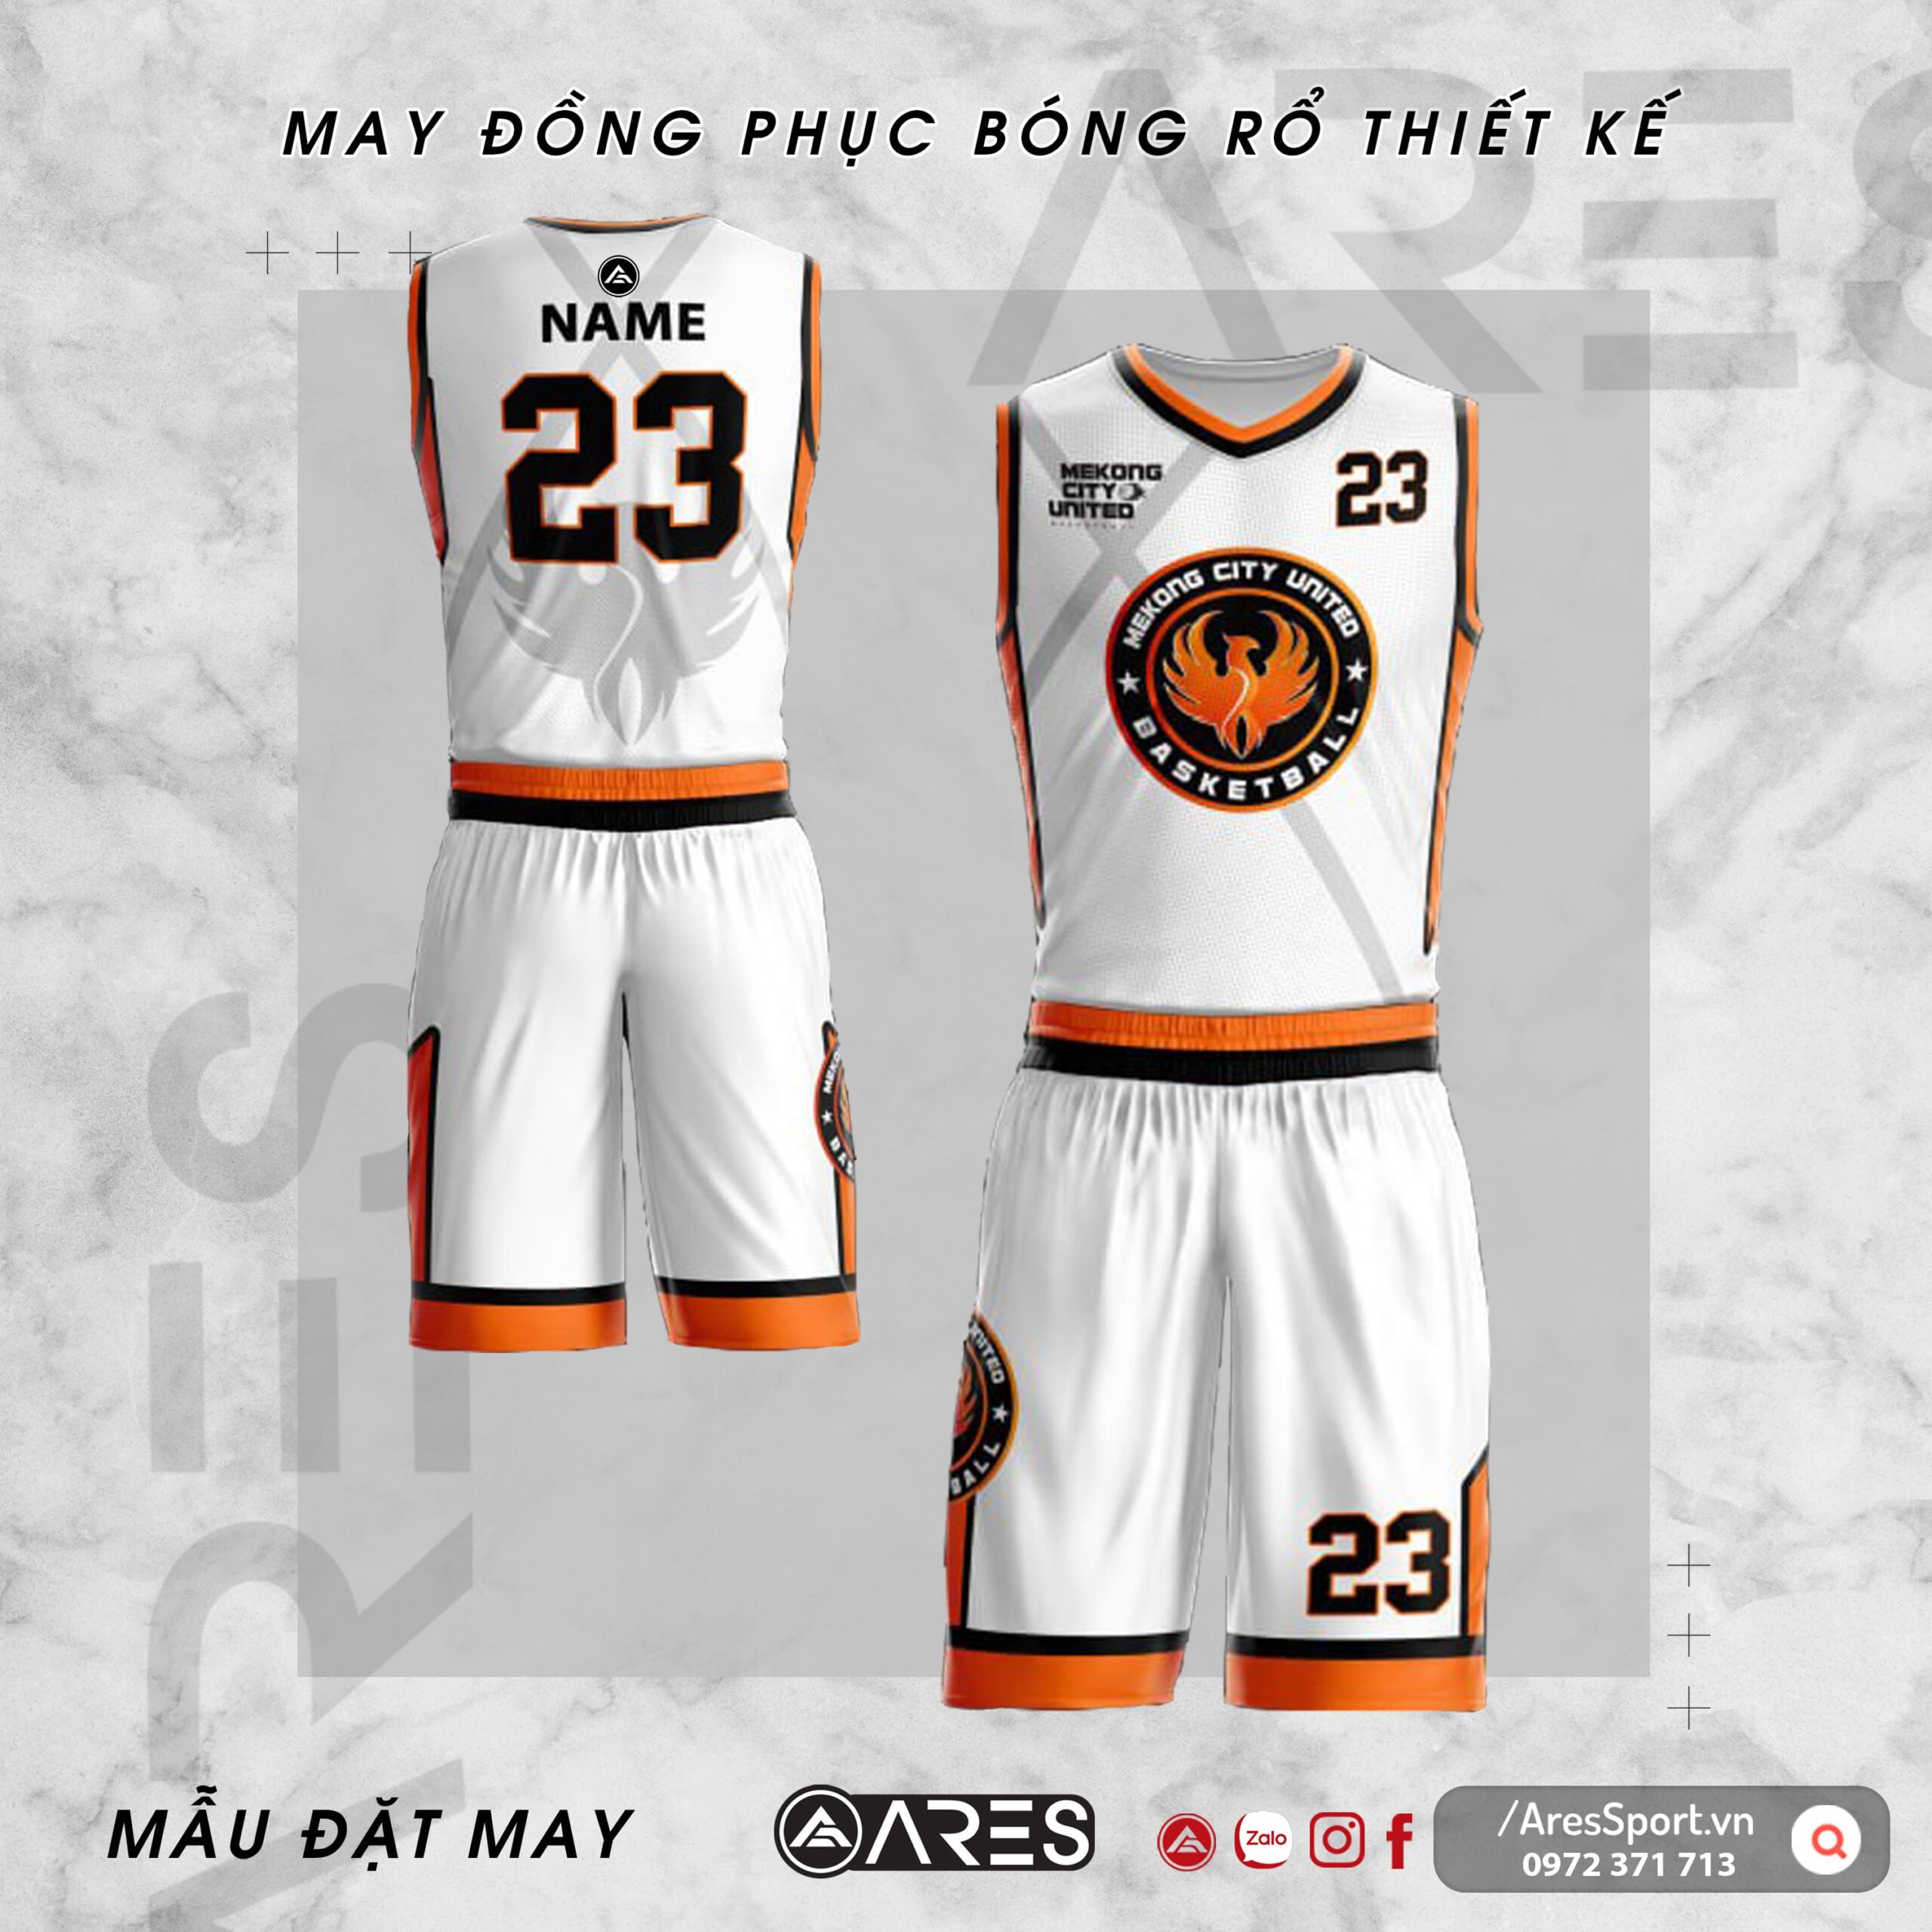 Đồng phục bóng rổ thiết kế Mekong City United trắng cam đơn giản thanh lịch